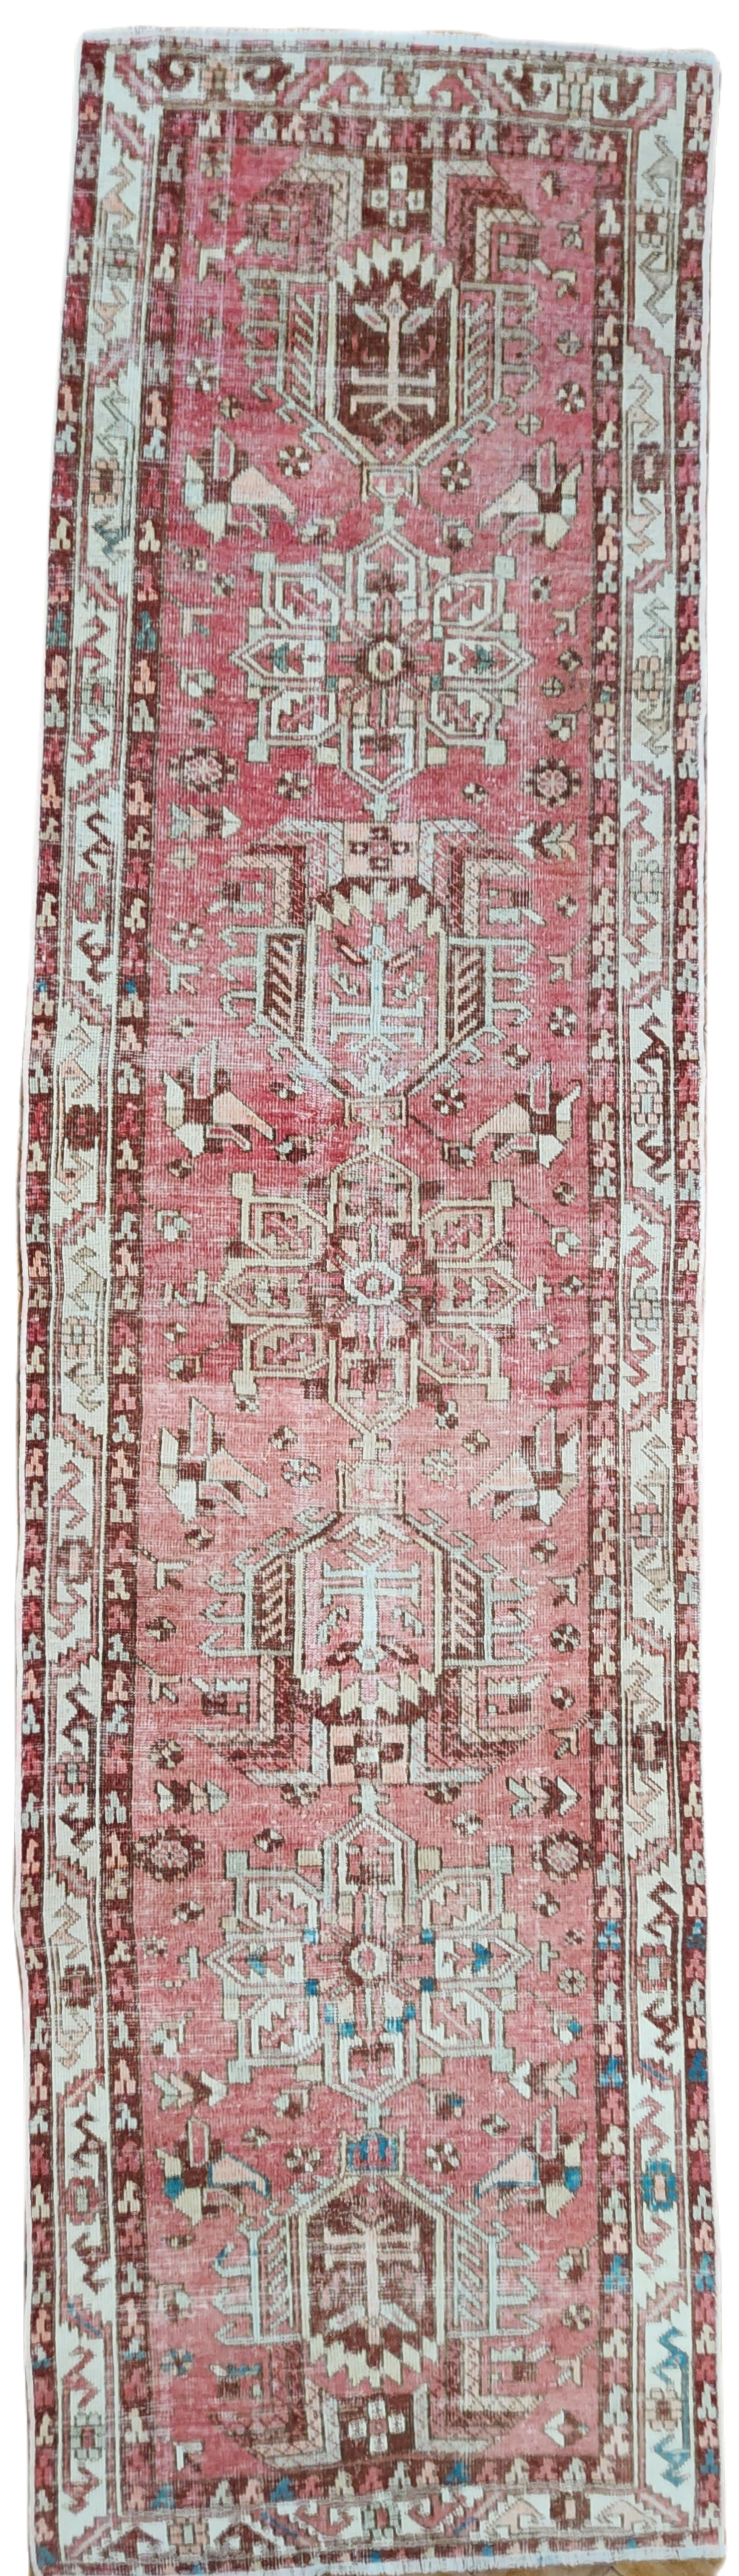 Pink and Beige Turkish Tribal Natural Wool Runner Rug, Persian Boho Rustic Decor Vintage Hallway Rug, Herke Recycled Berber Rug 12’6”x 3’4”